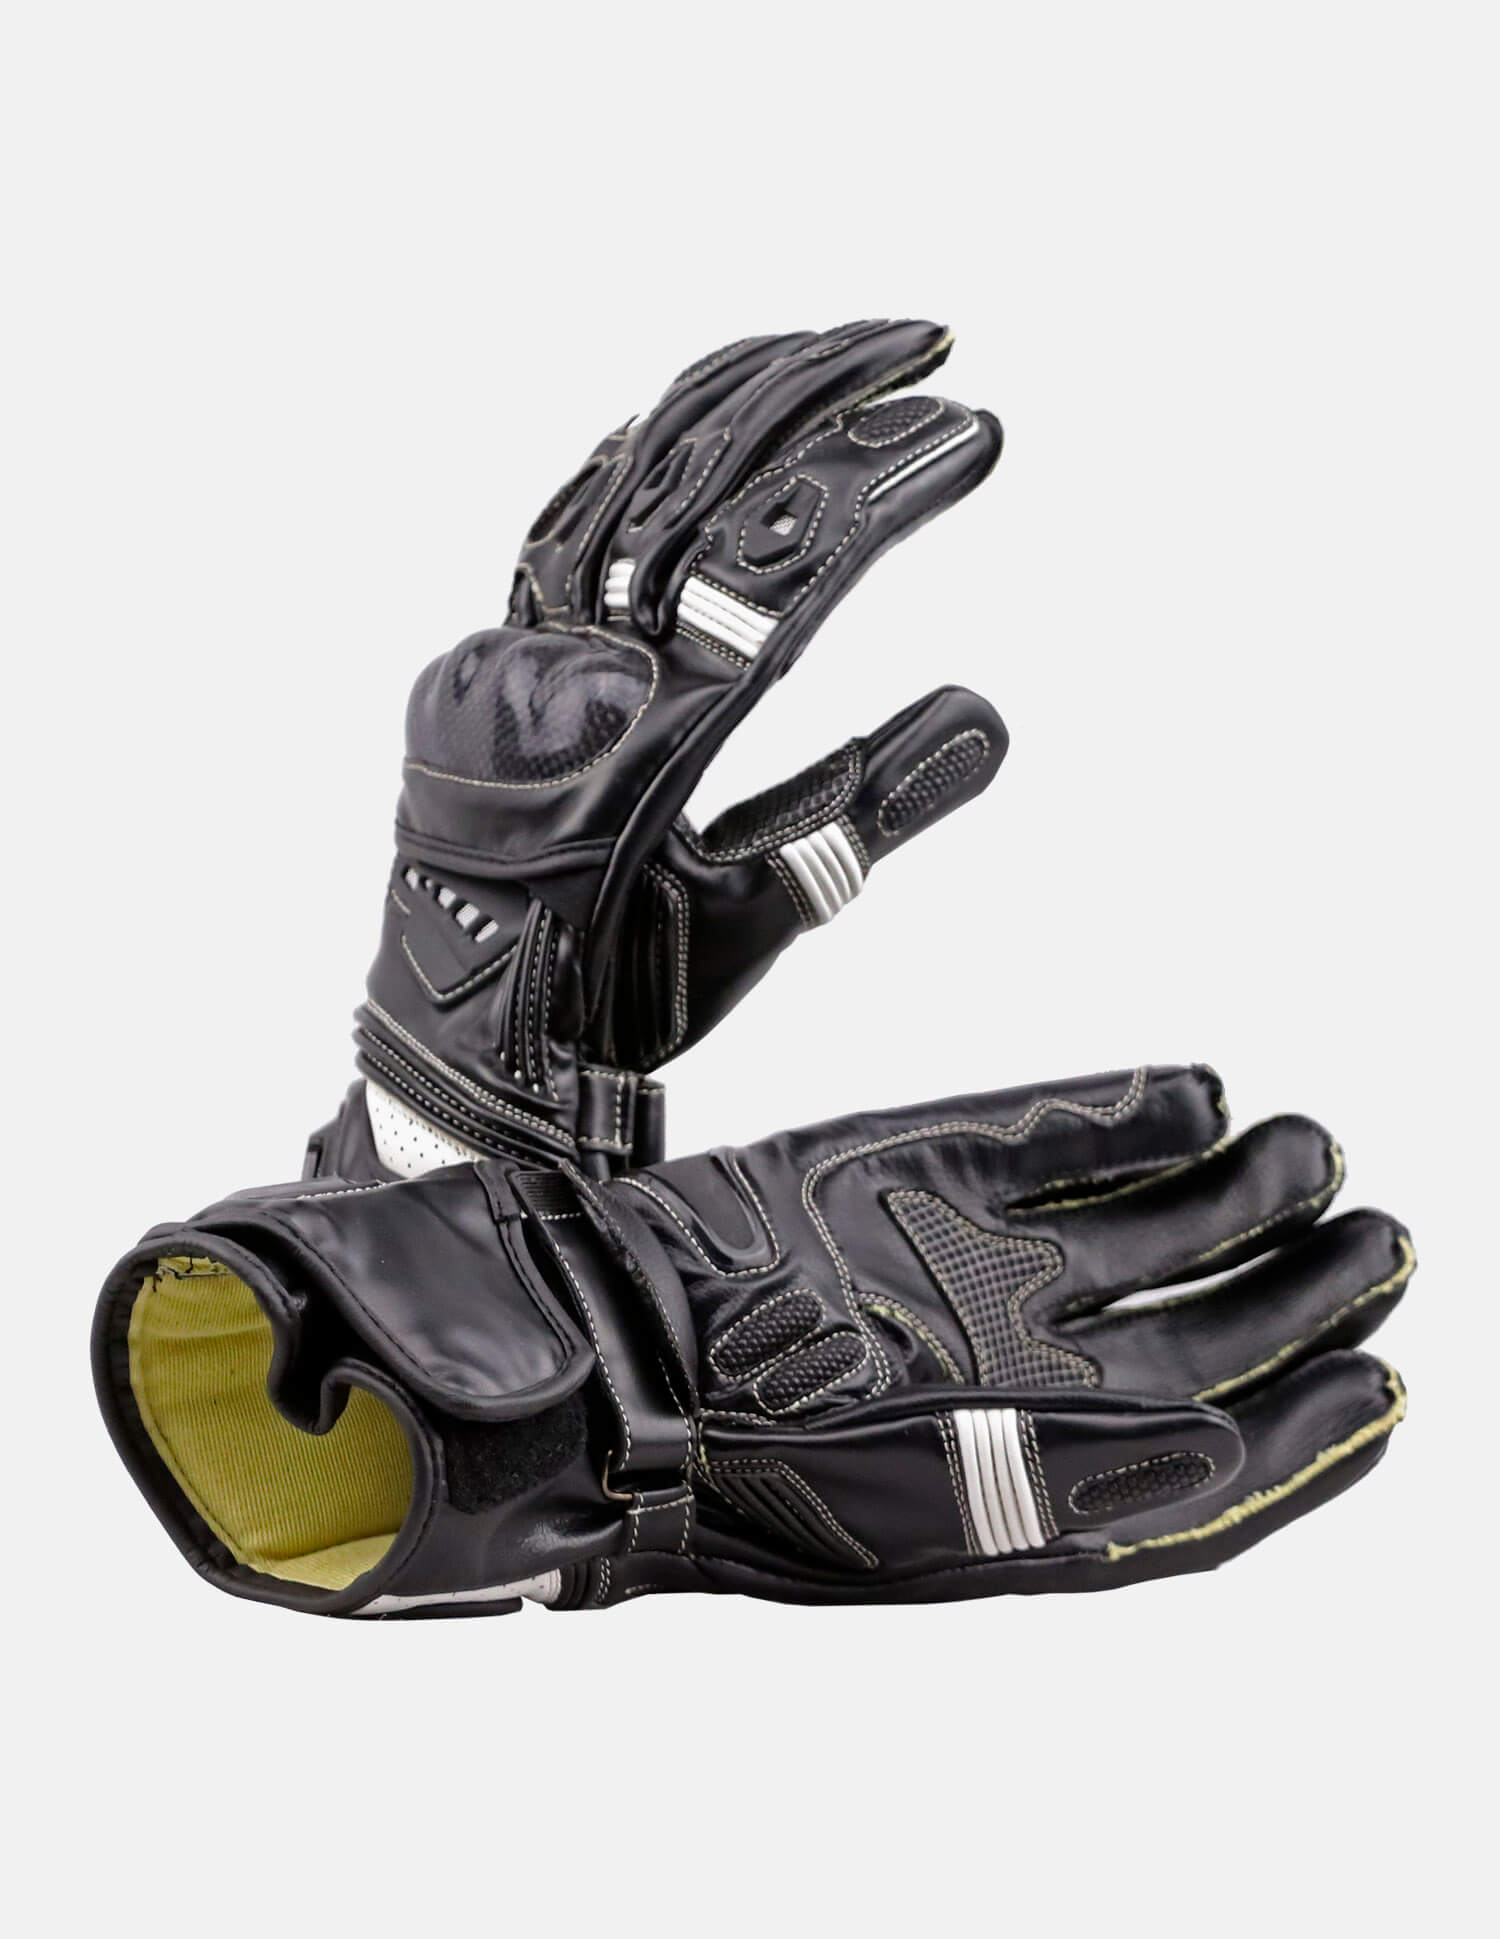 Meteor Gloves First Version